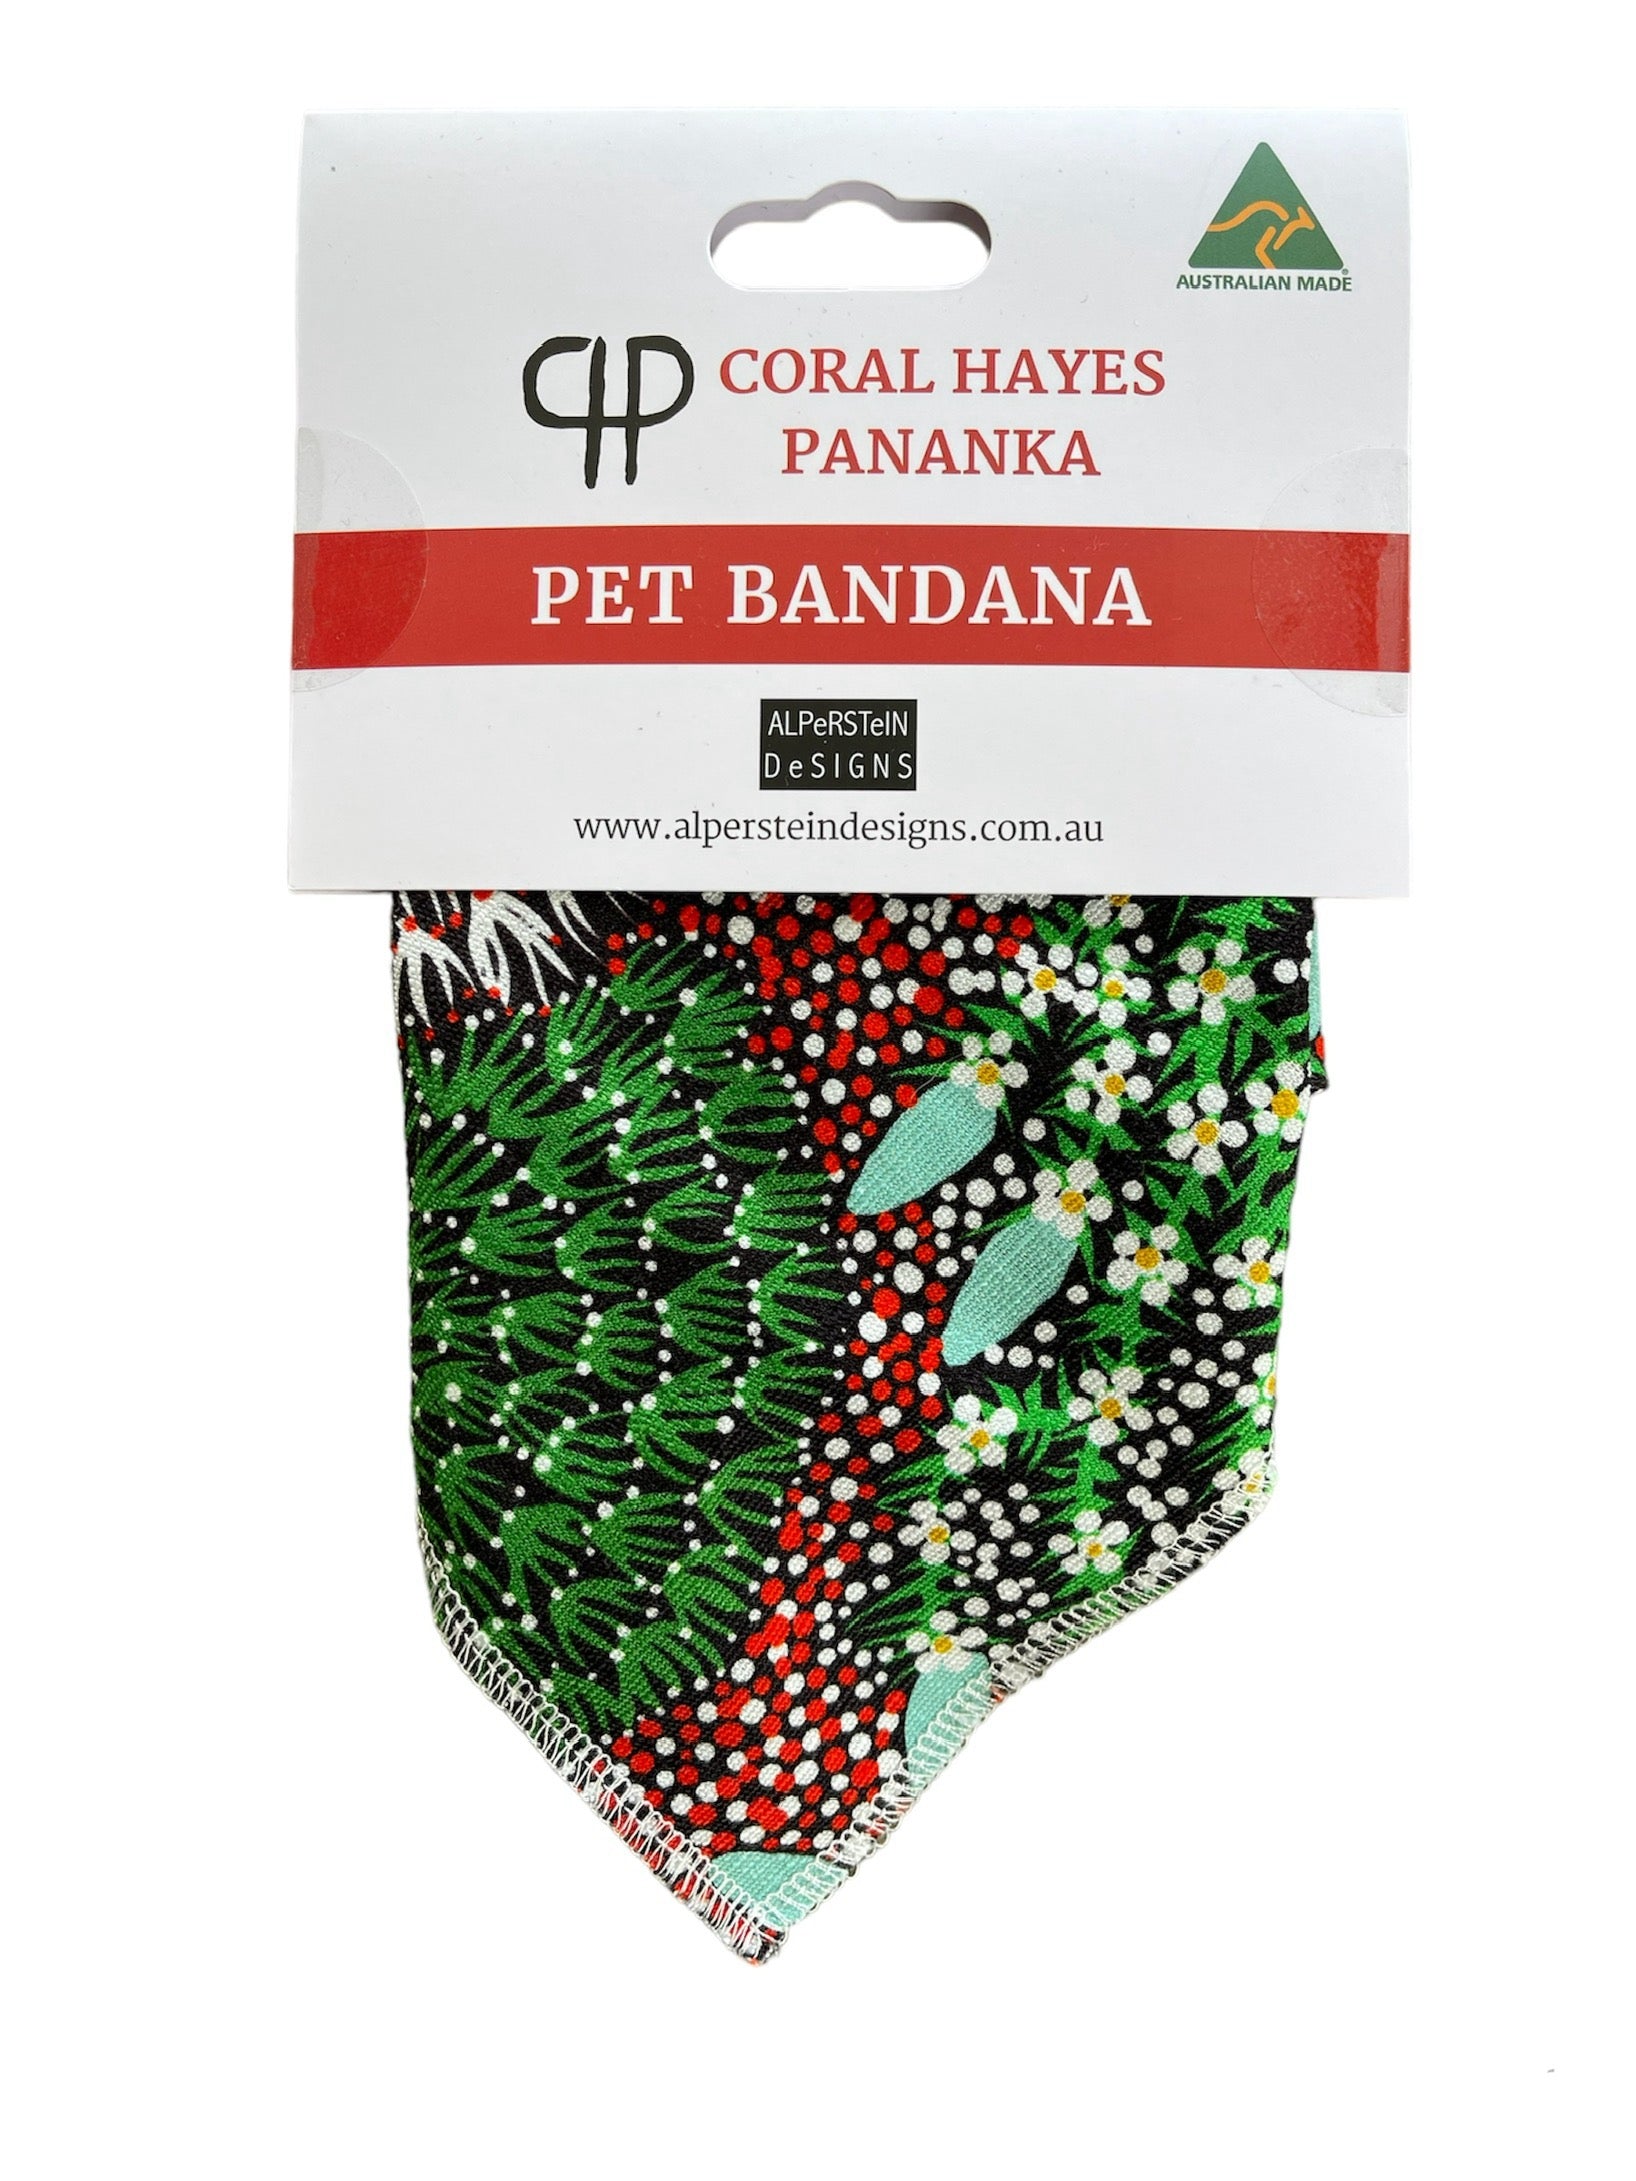 Pet Bandana - Coral Hayes